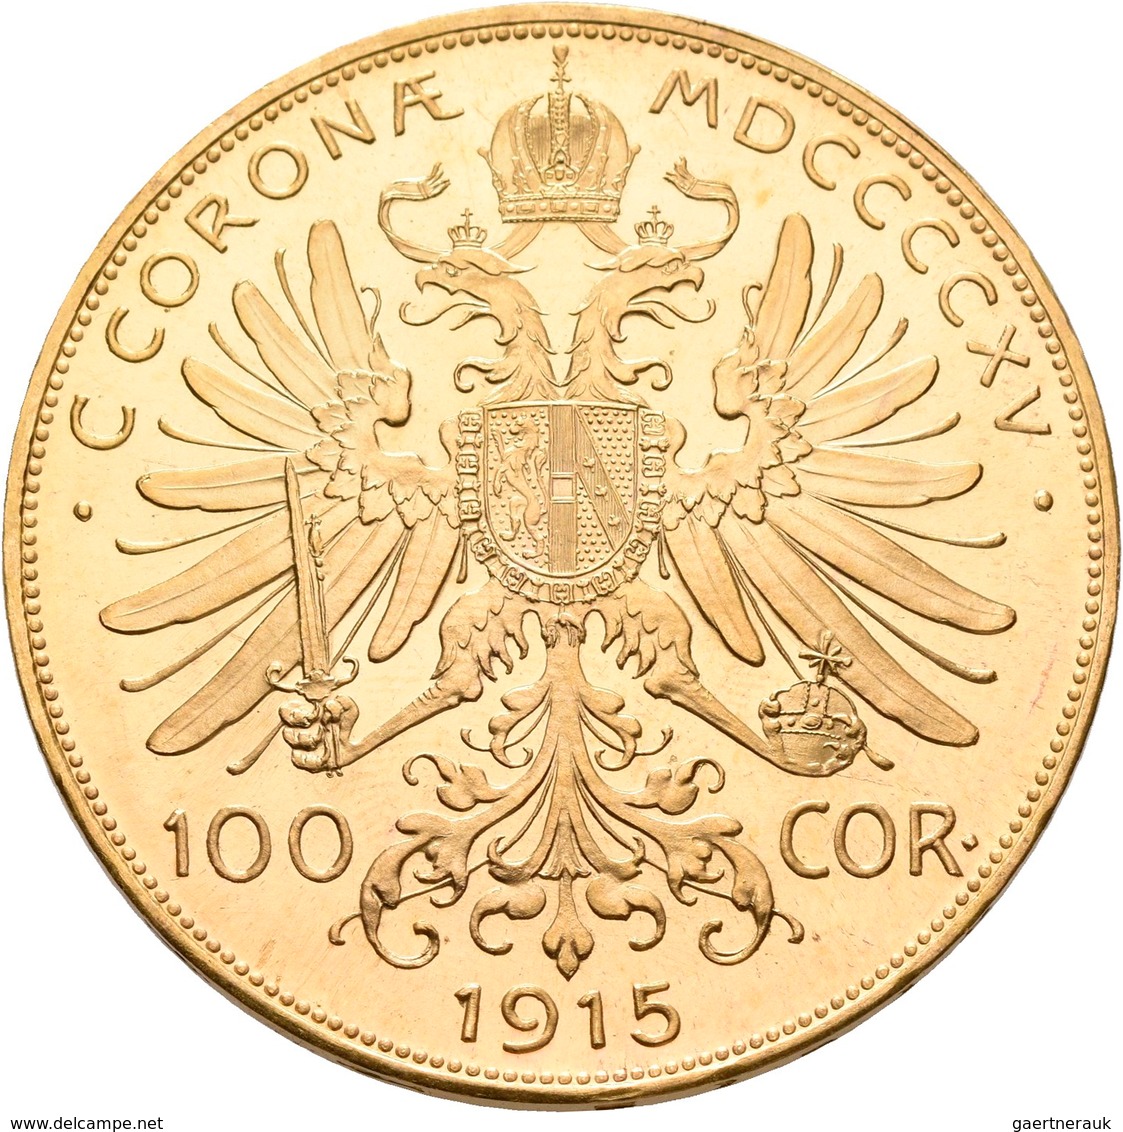 Österreich - Anlagegold: Franz Joseph I. 1848-1916: Lot 2 Goldmünzen: 2 X 100 Kronen 1915 (NP), KM# - Oesterreich